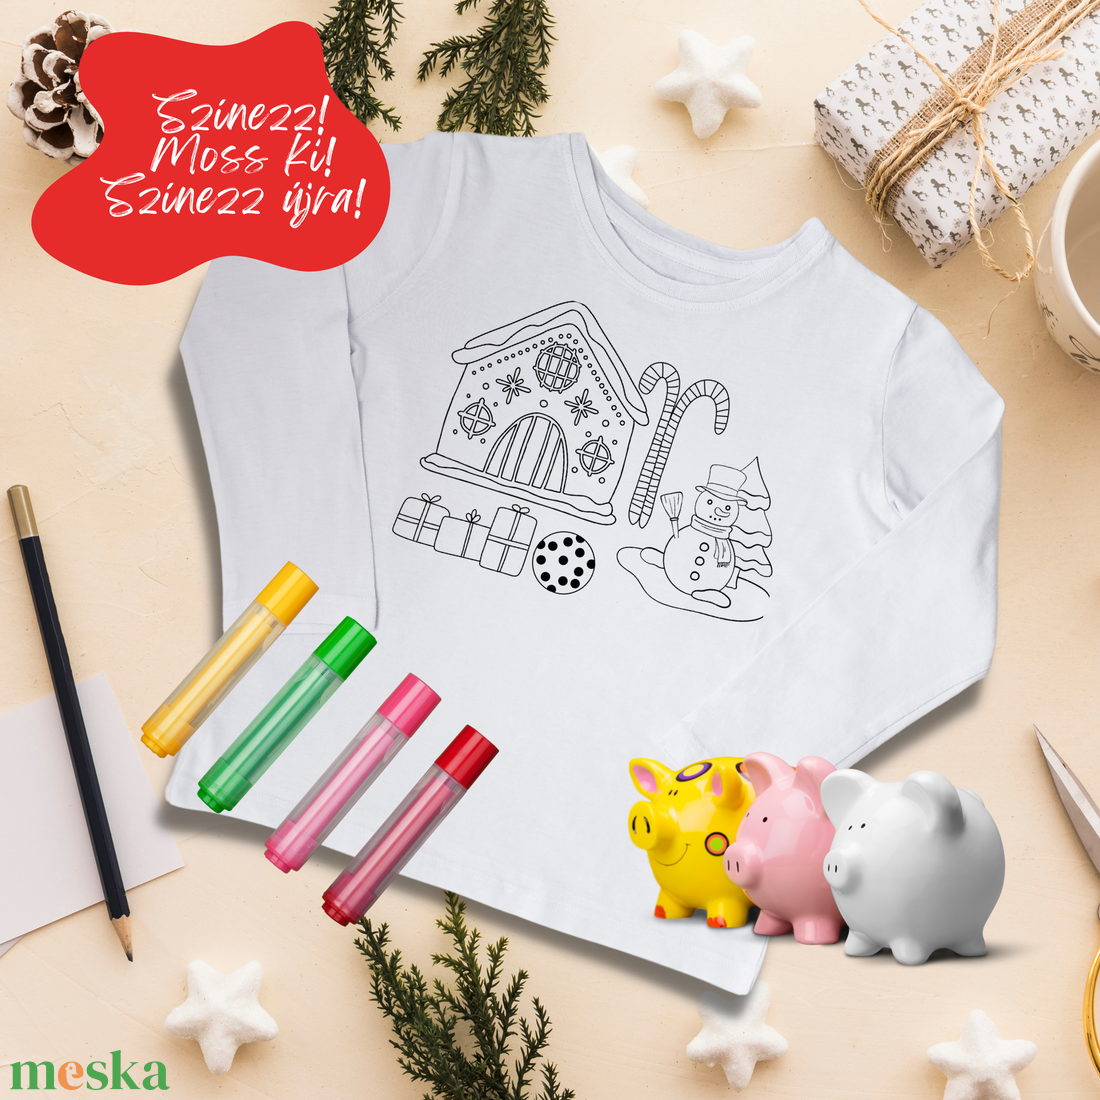 Mézeskalácsos-hóemberes színezhető rövid, vagy hosszú ujjú gyerek póló - karácsonyi póló - ruha & divat - babaruha & gyerekruha - póló - Meska.hu